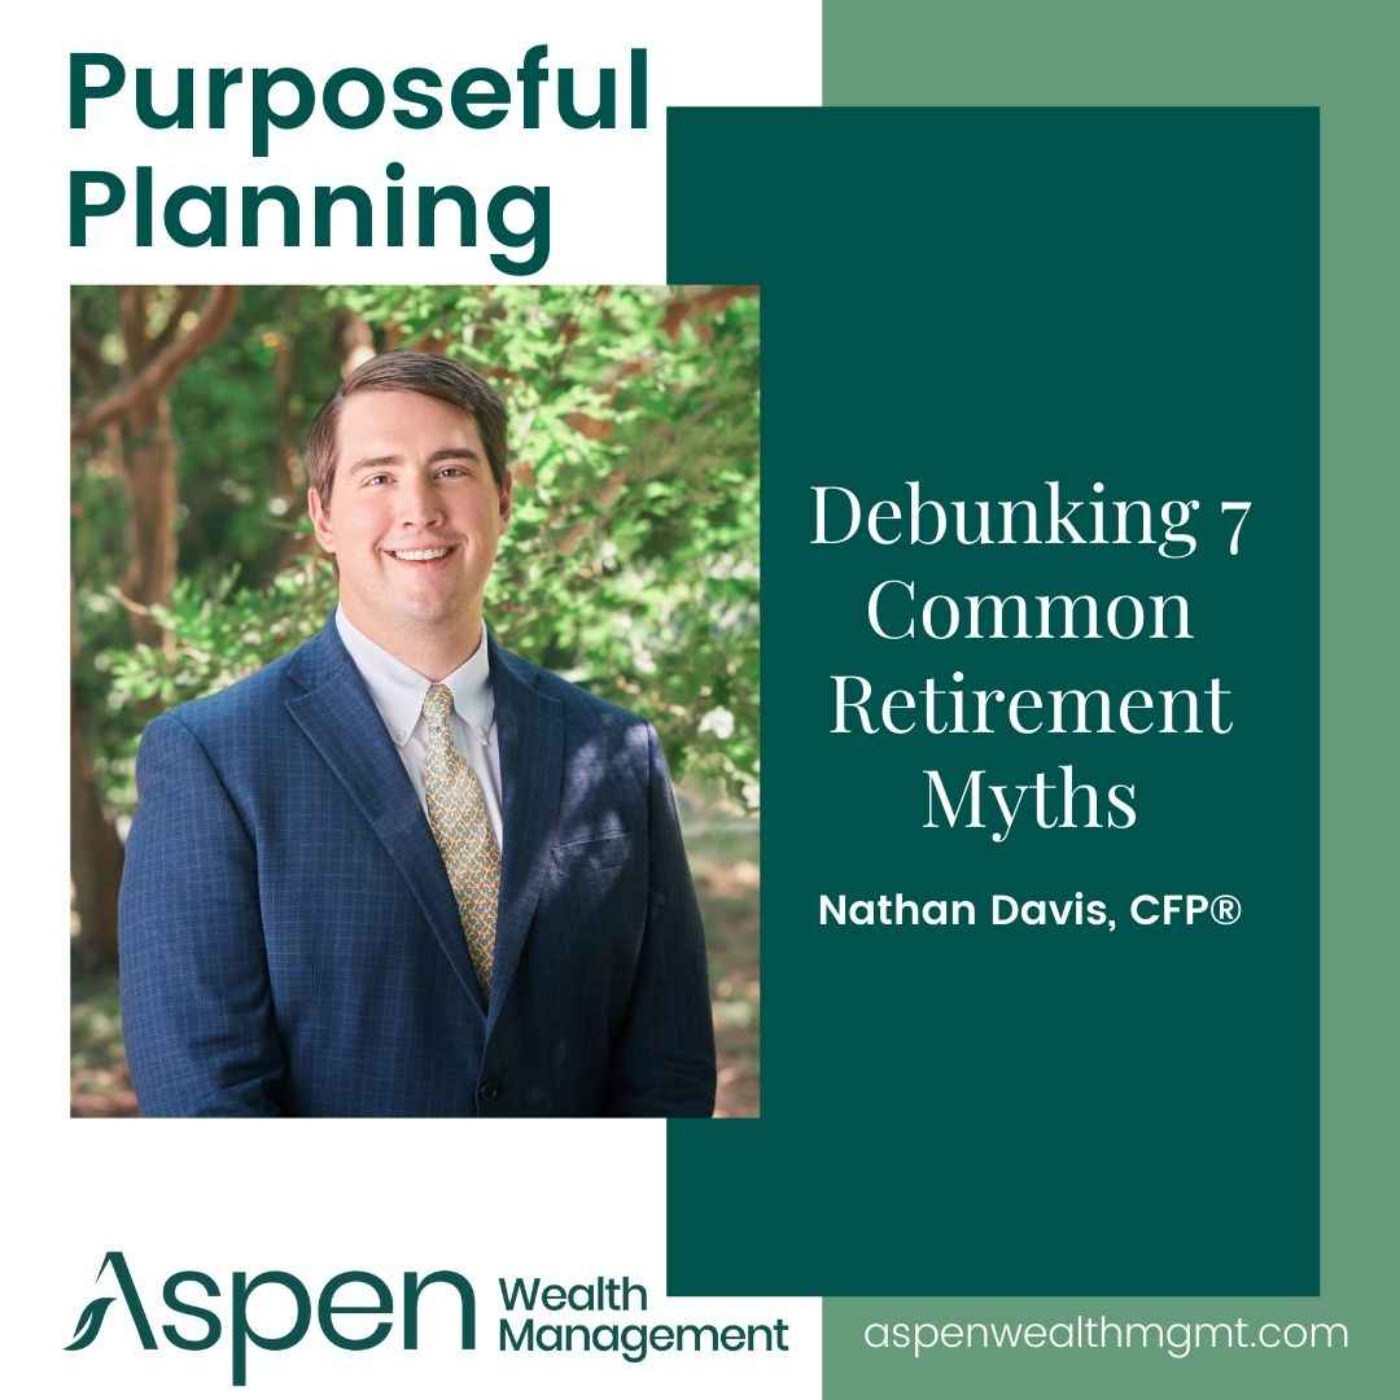 Debunking 7 Common Retirement Myths, Part 1